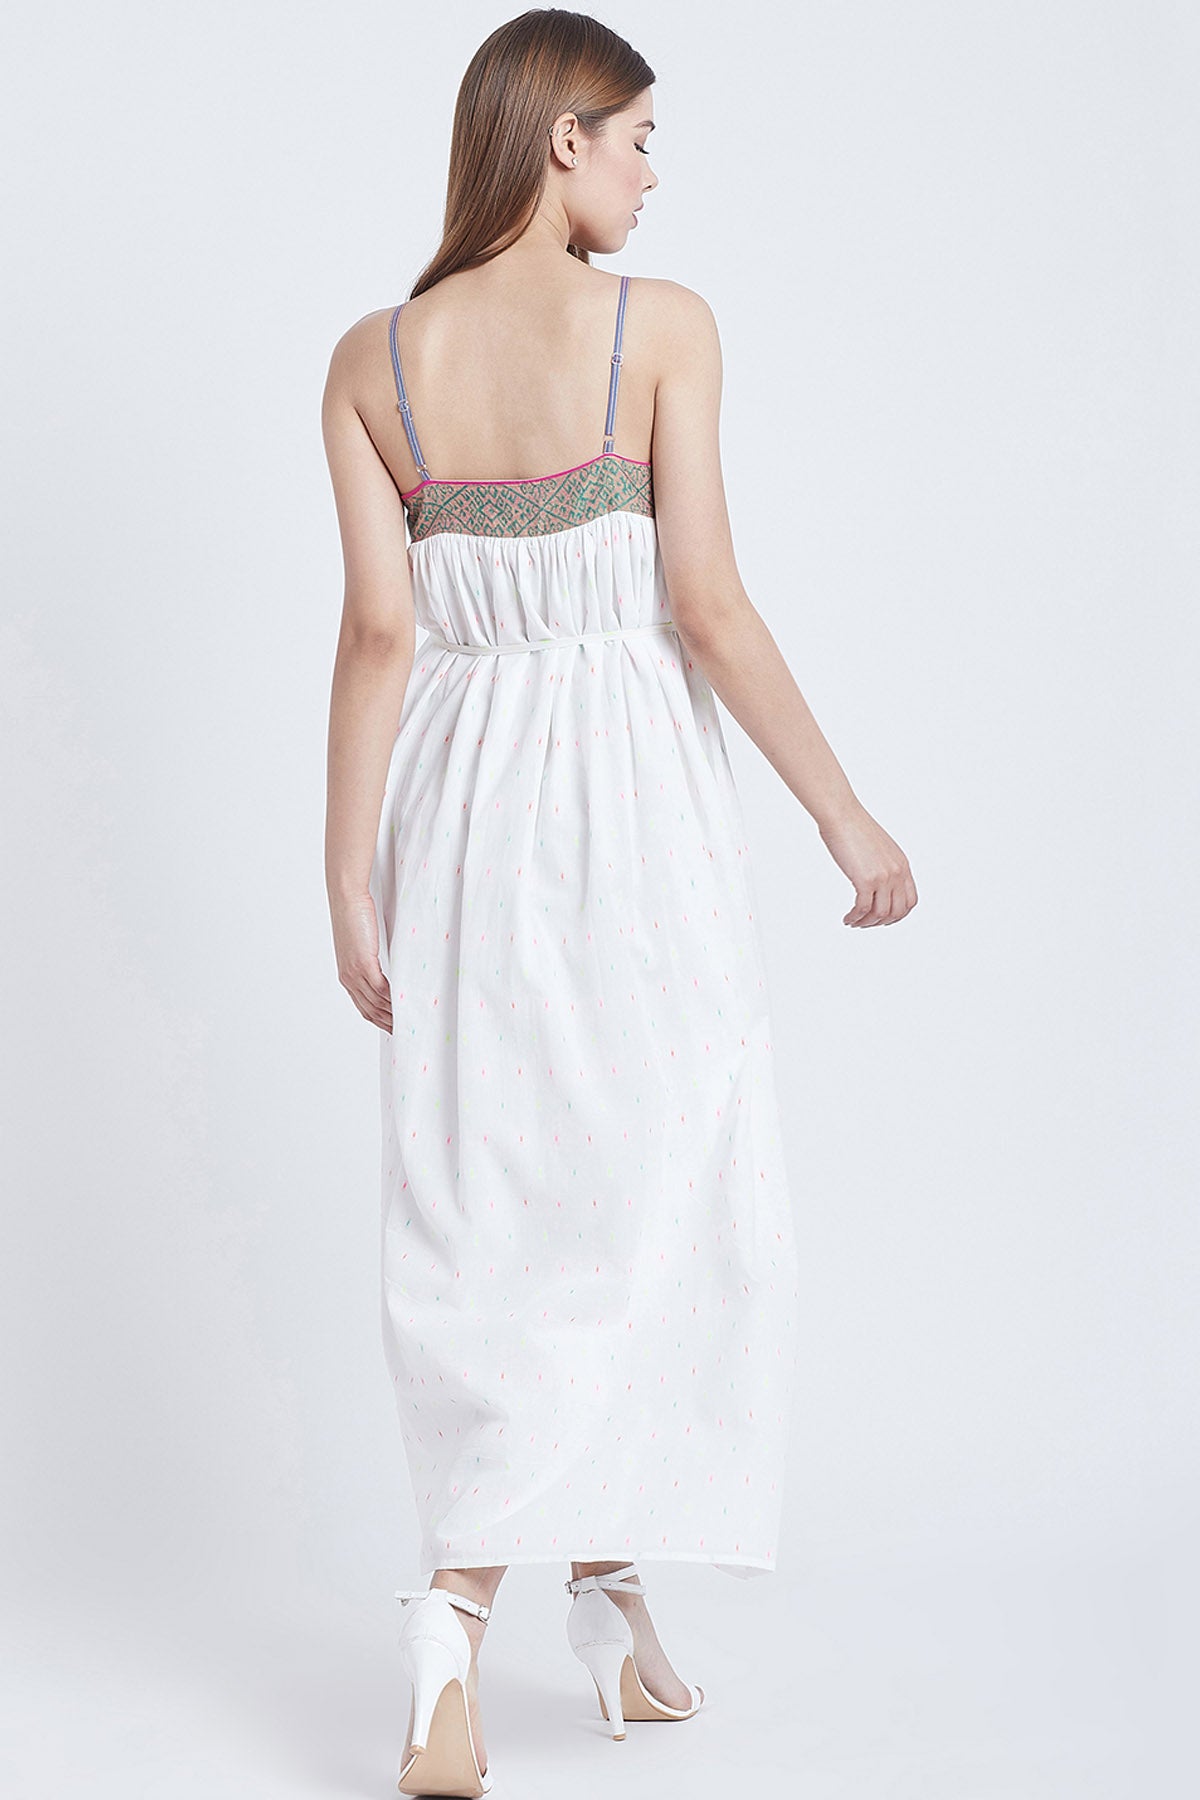 White Cotton Sleeveless Dress